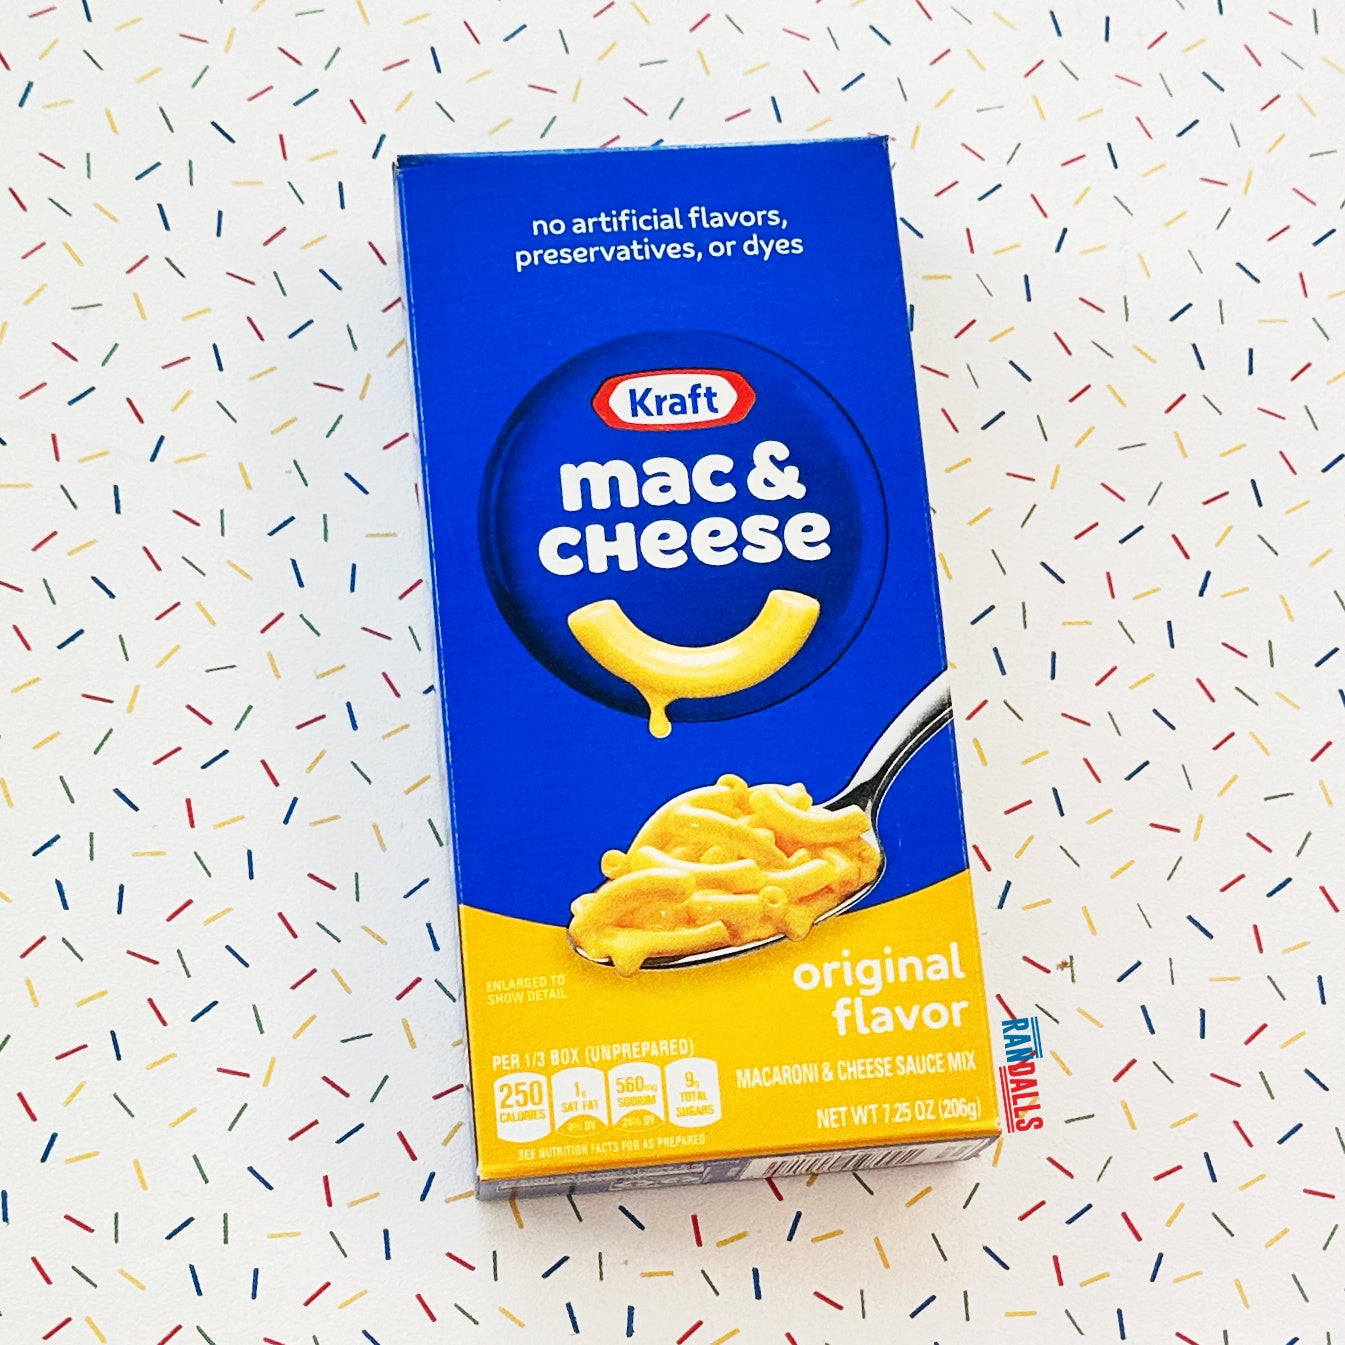 Kraft Mac & Cheese Macaroni and Cheese Dinner SpongeBob